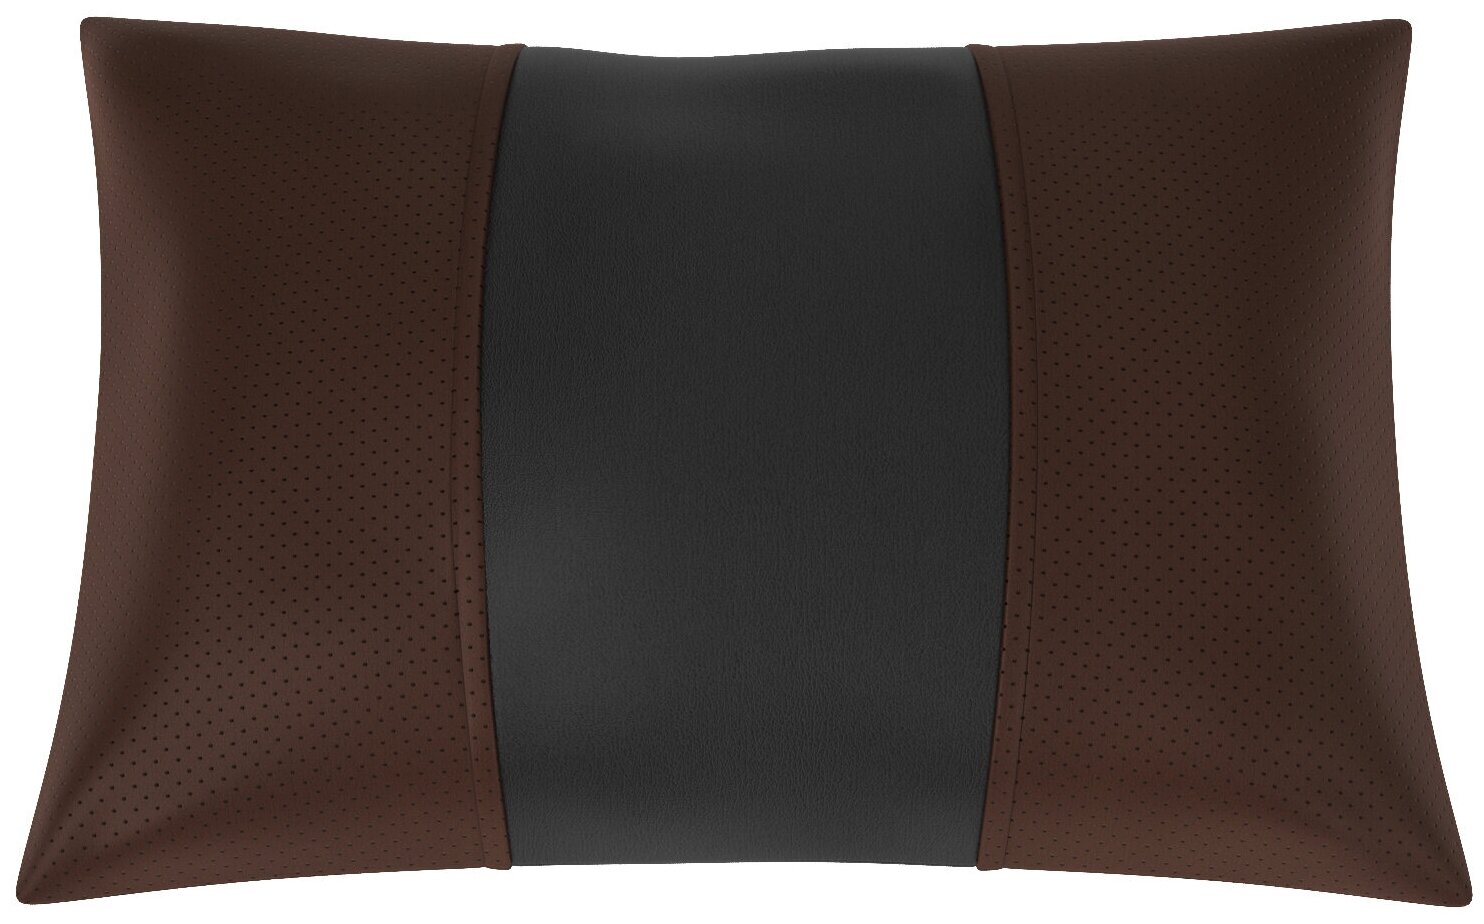 Автомобильная подушка для Citroen C5 2 (Ситроен С5 2). Экокожа. Середина: чёрная гладкая экокожа. Боковины: шоколад экокожа с перфорацией. 1 шт.